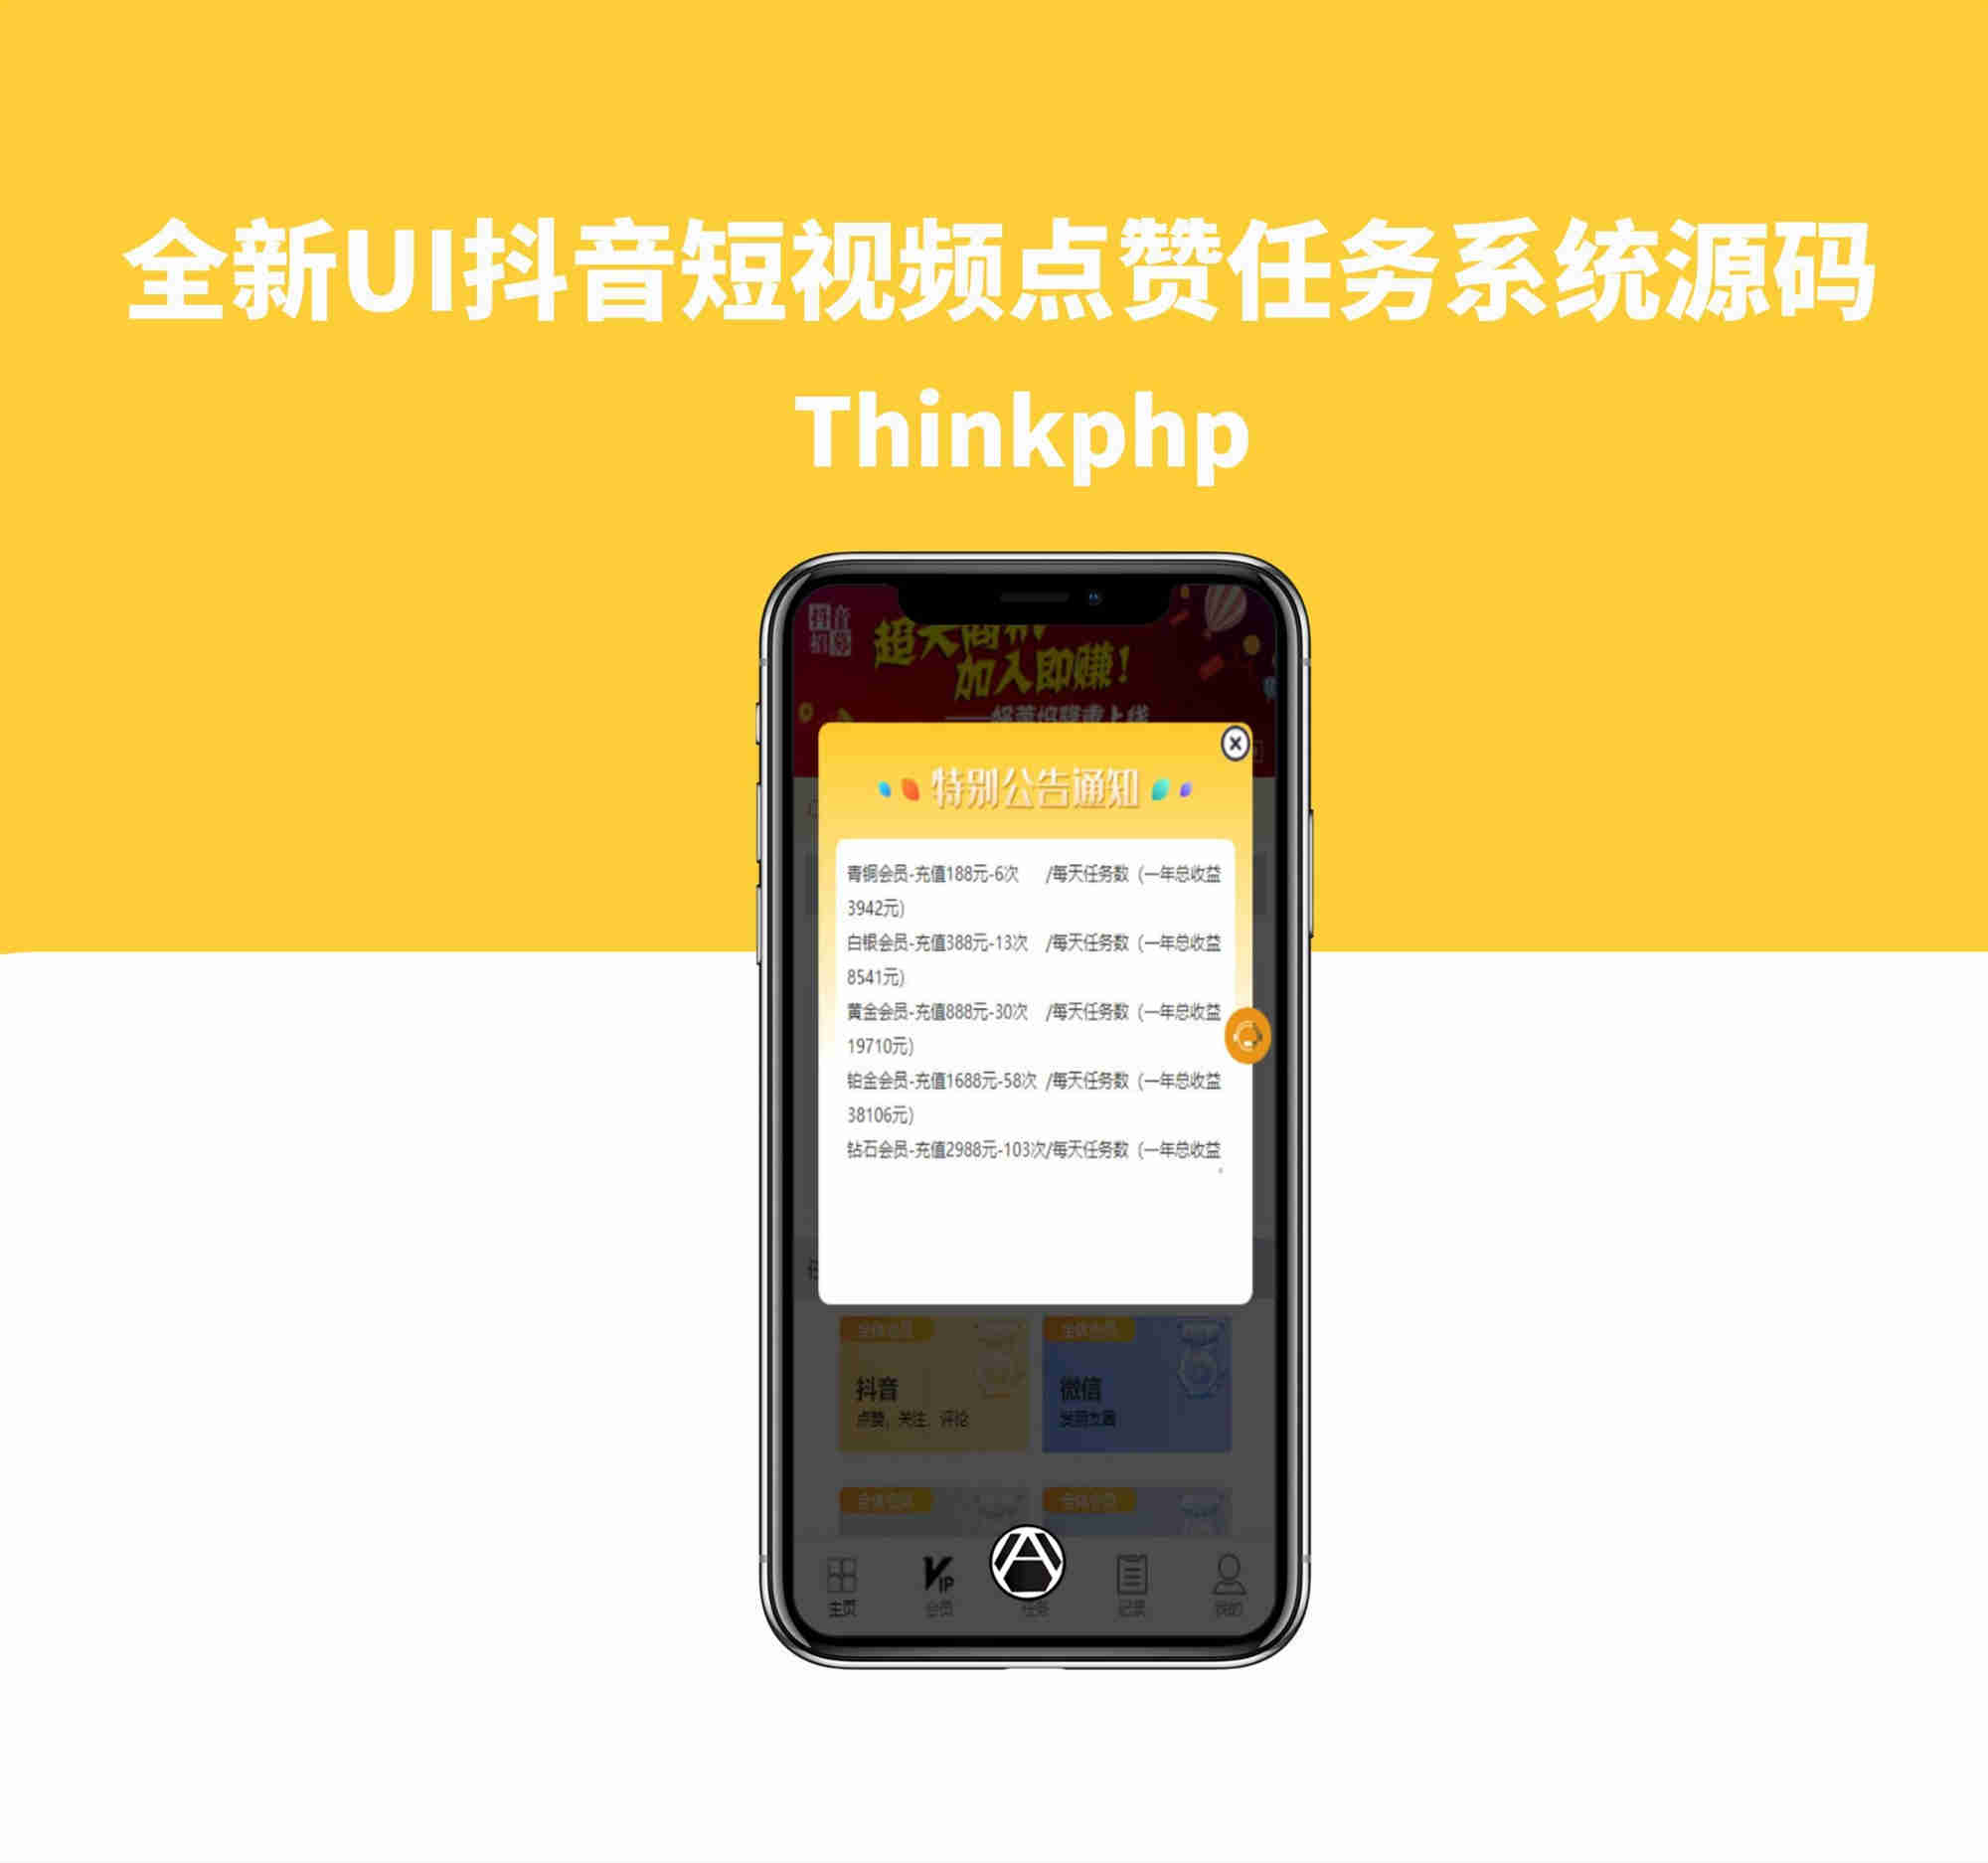 全新UI抖音短视频点赞任务系统源码Thinkphp源码